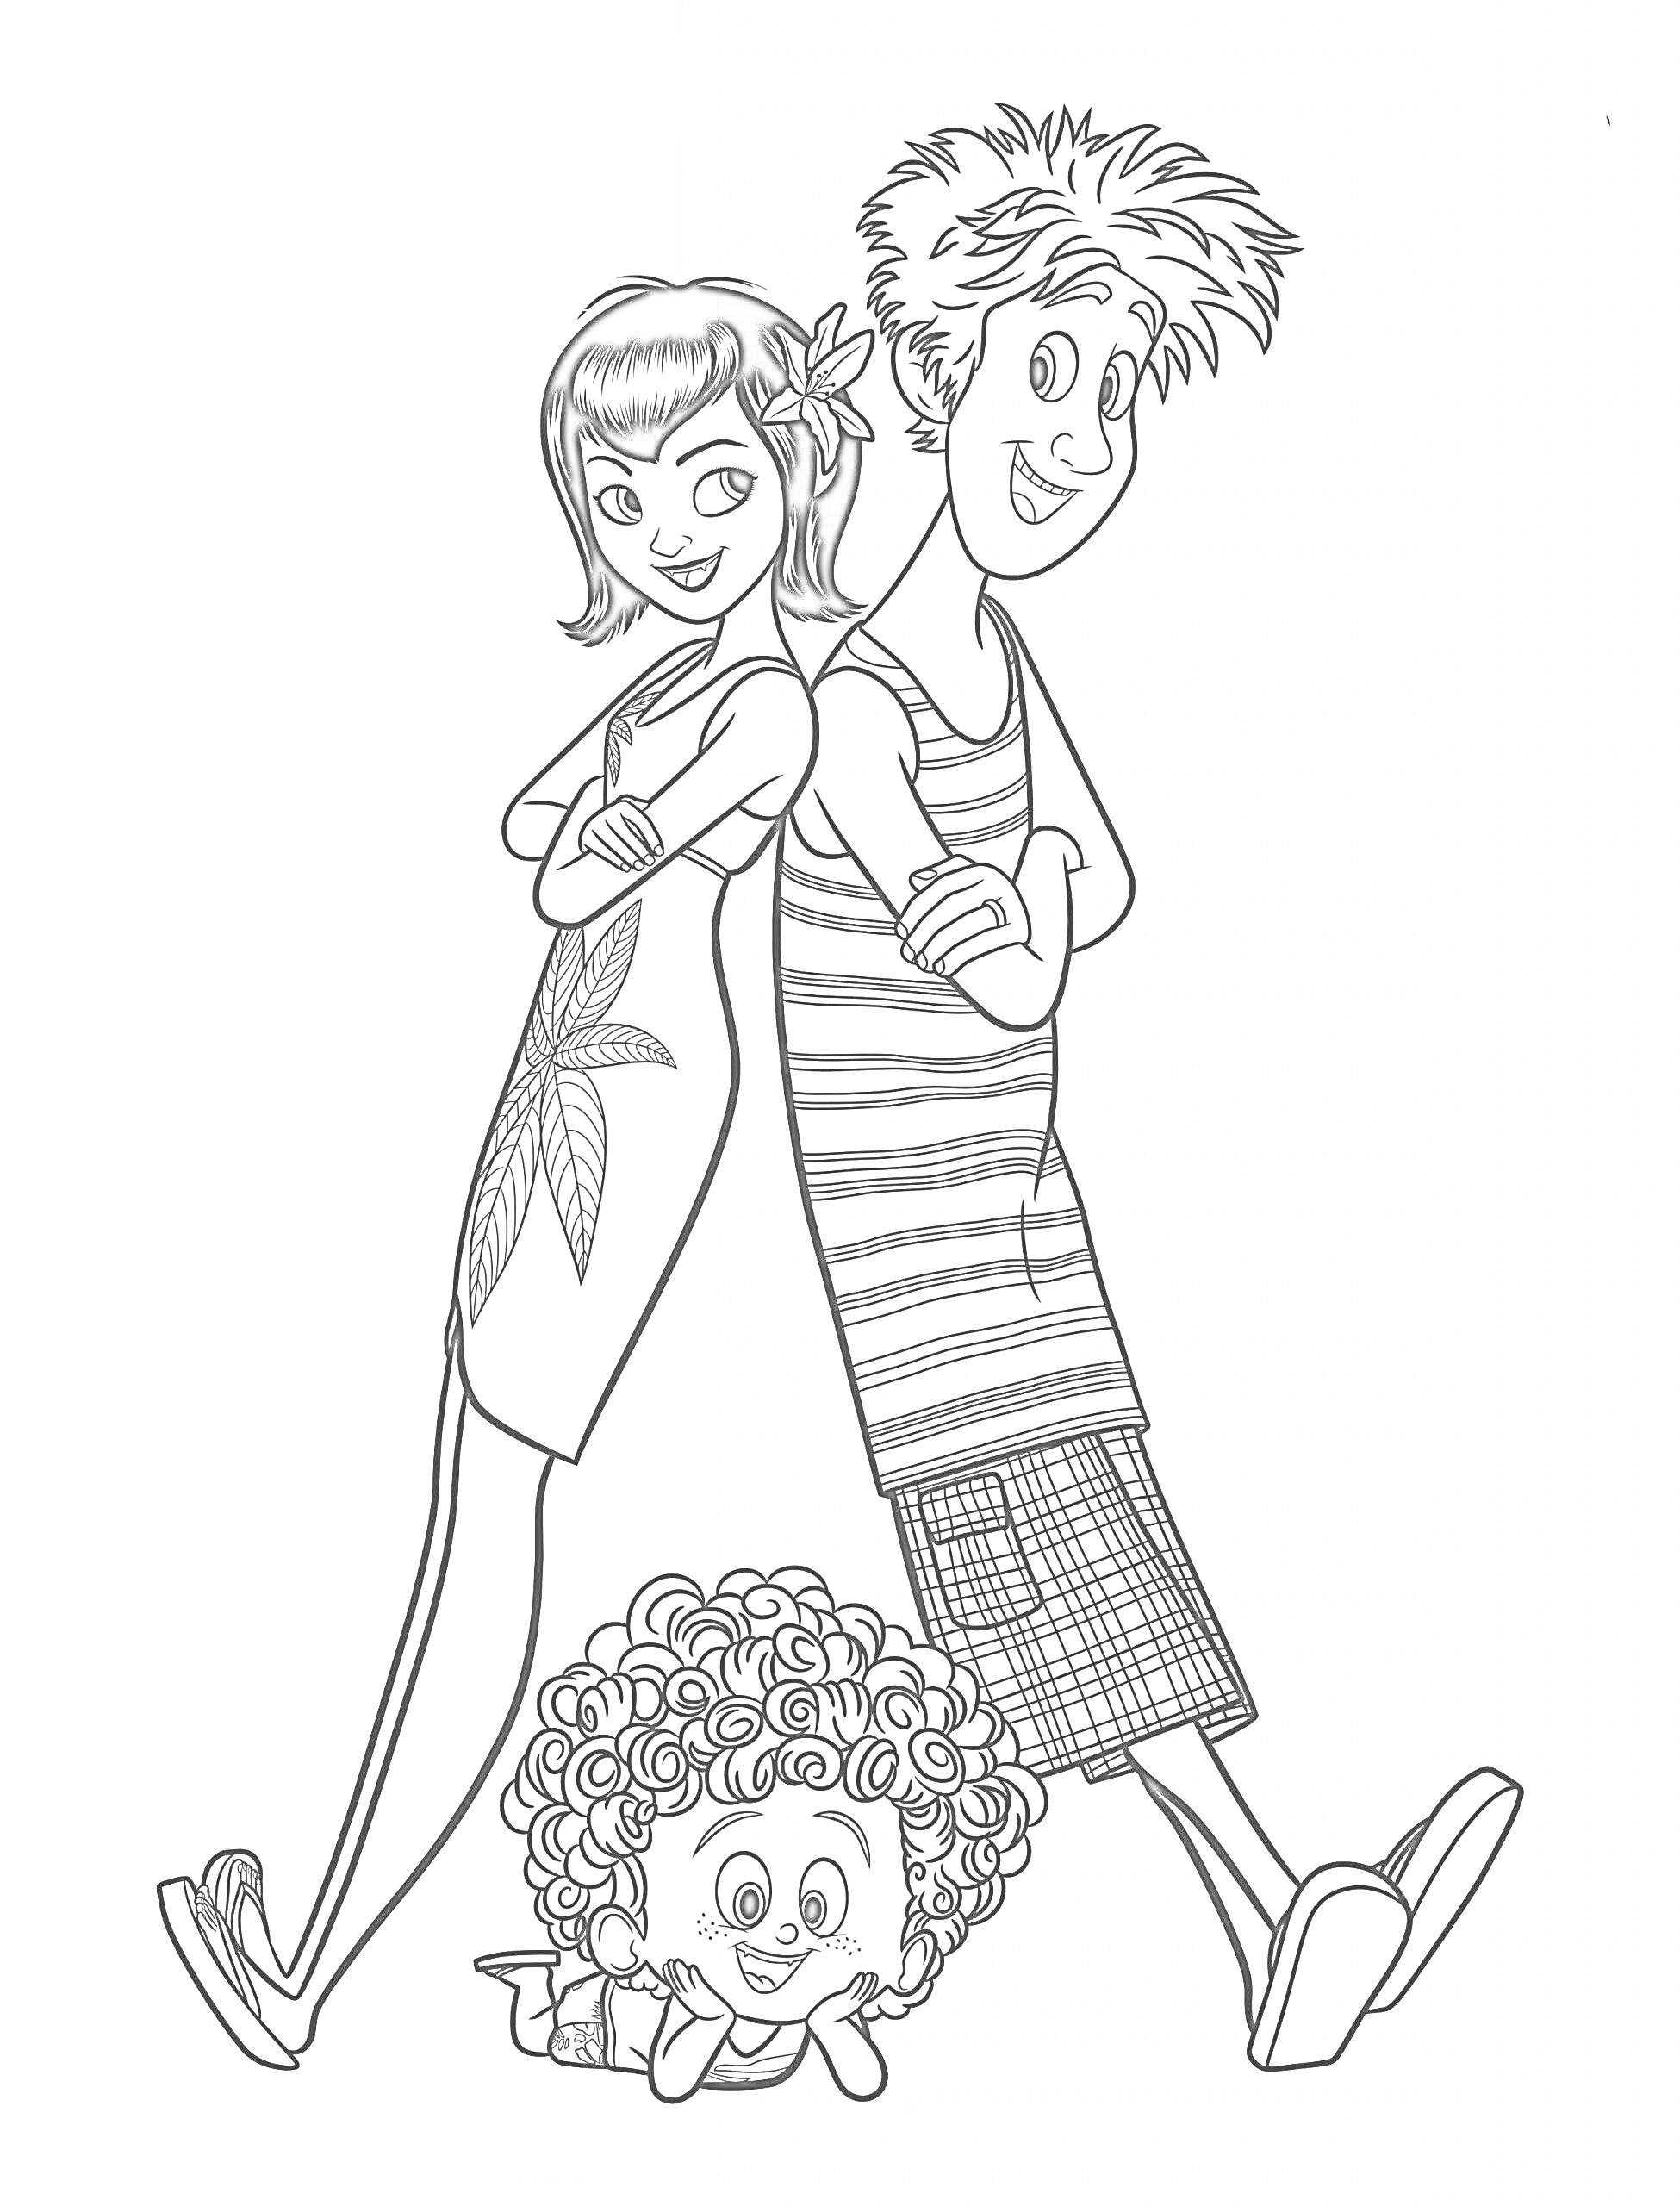 Женщина со цветком в волосах и мужчина в полосатой майке, стоящие спинами друг к другу, и ребенок с кудрявыми волосами с игрушкой